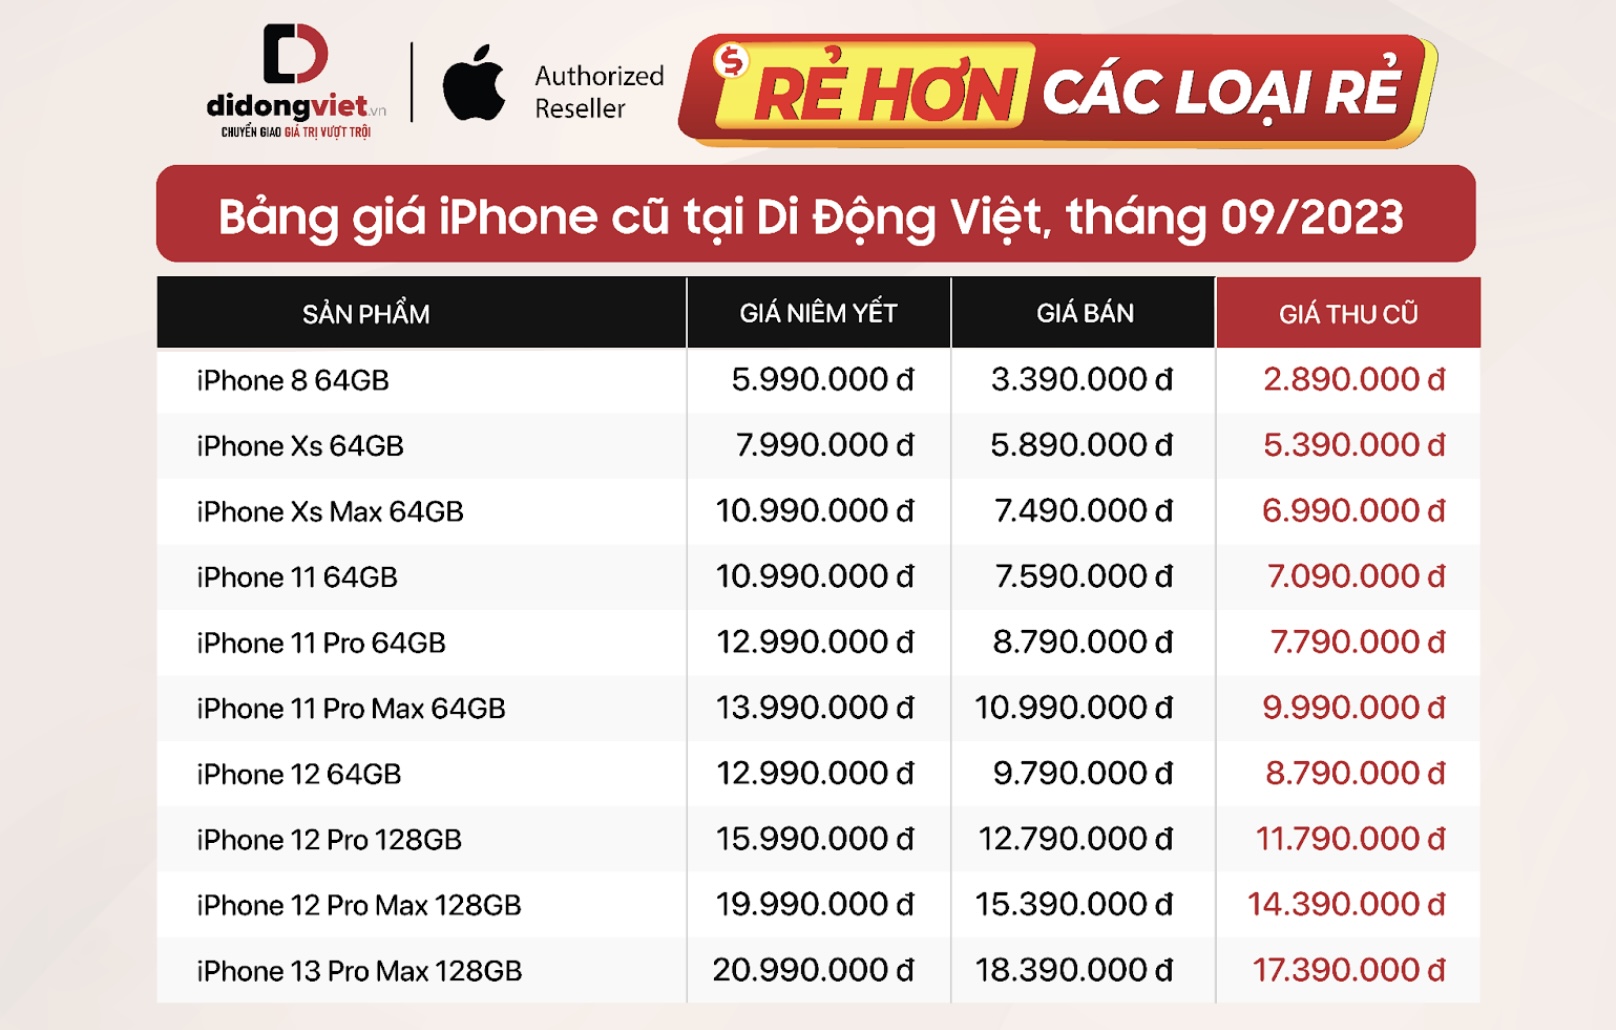 Bảng giá iPhone cũ “Rẻ hơn các loại rẻ” tại Di Động Việt đầu tháng 9/2023